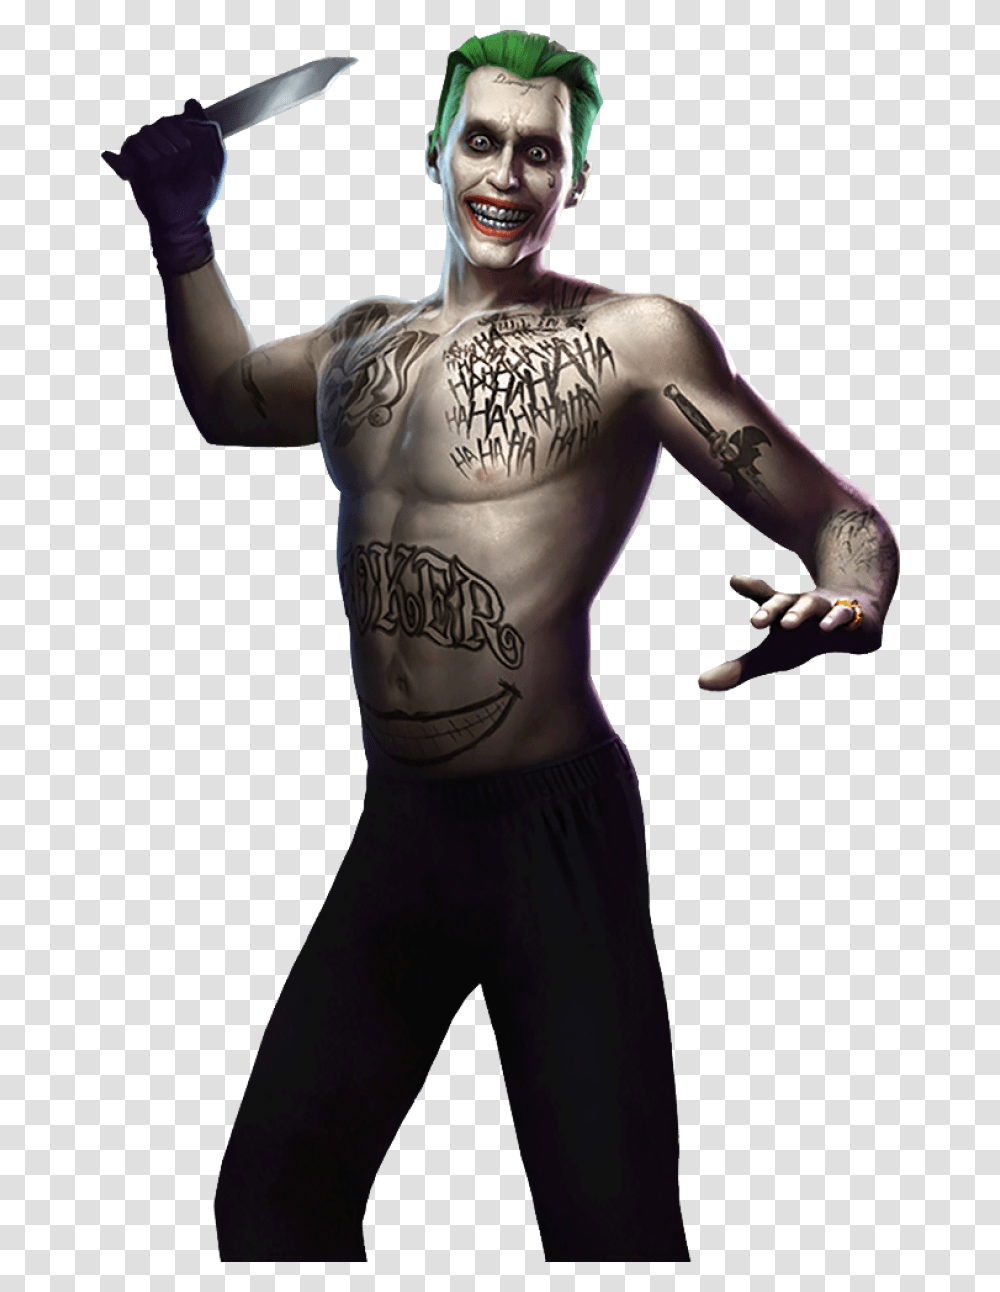 Joker Image Suicide Squad Joker Injustice, Skin, Person, Human, Arm Transparent Png